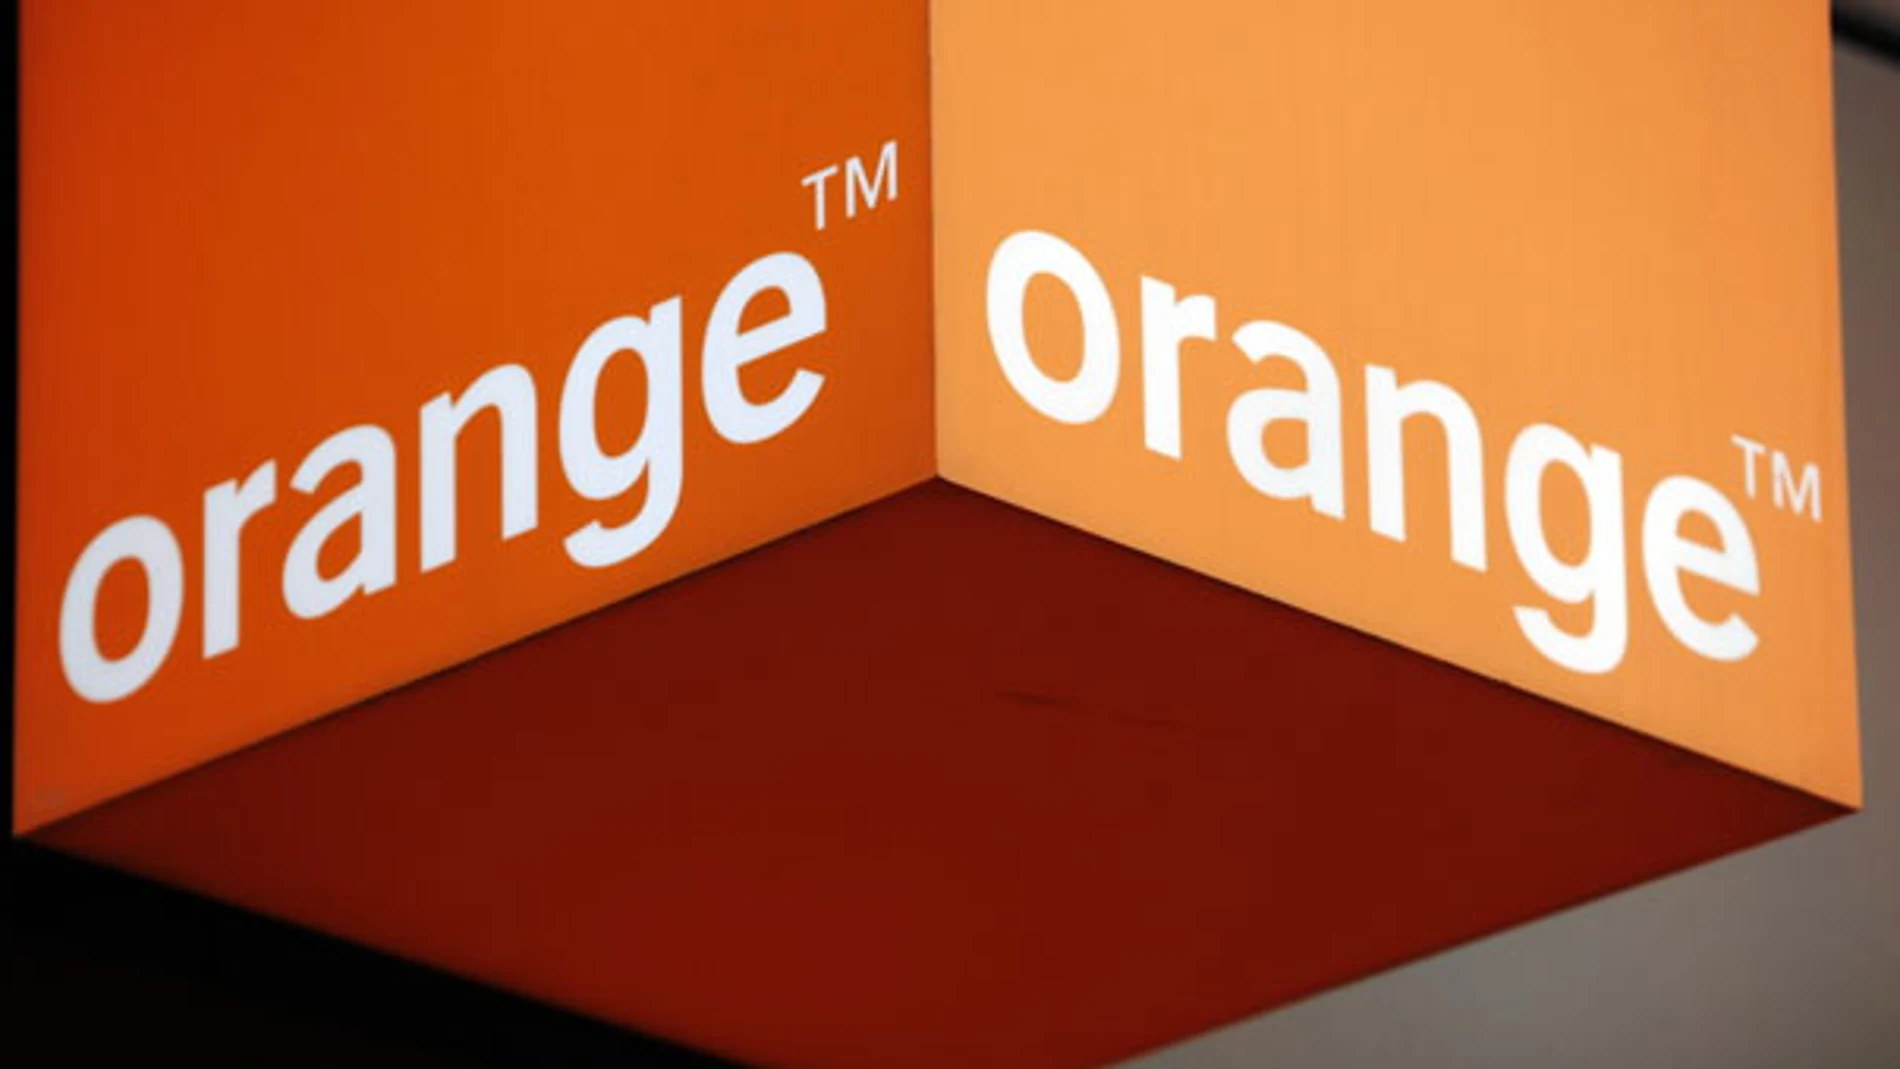 Orange reconoce problemas técnicos generalizados. (Archivo)